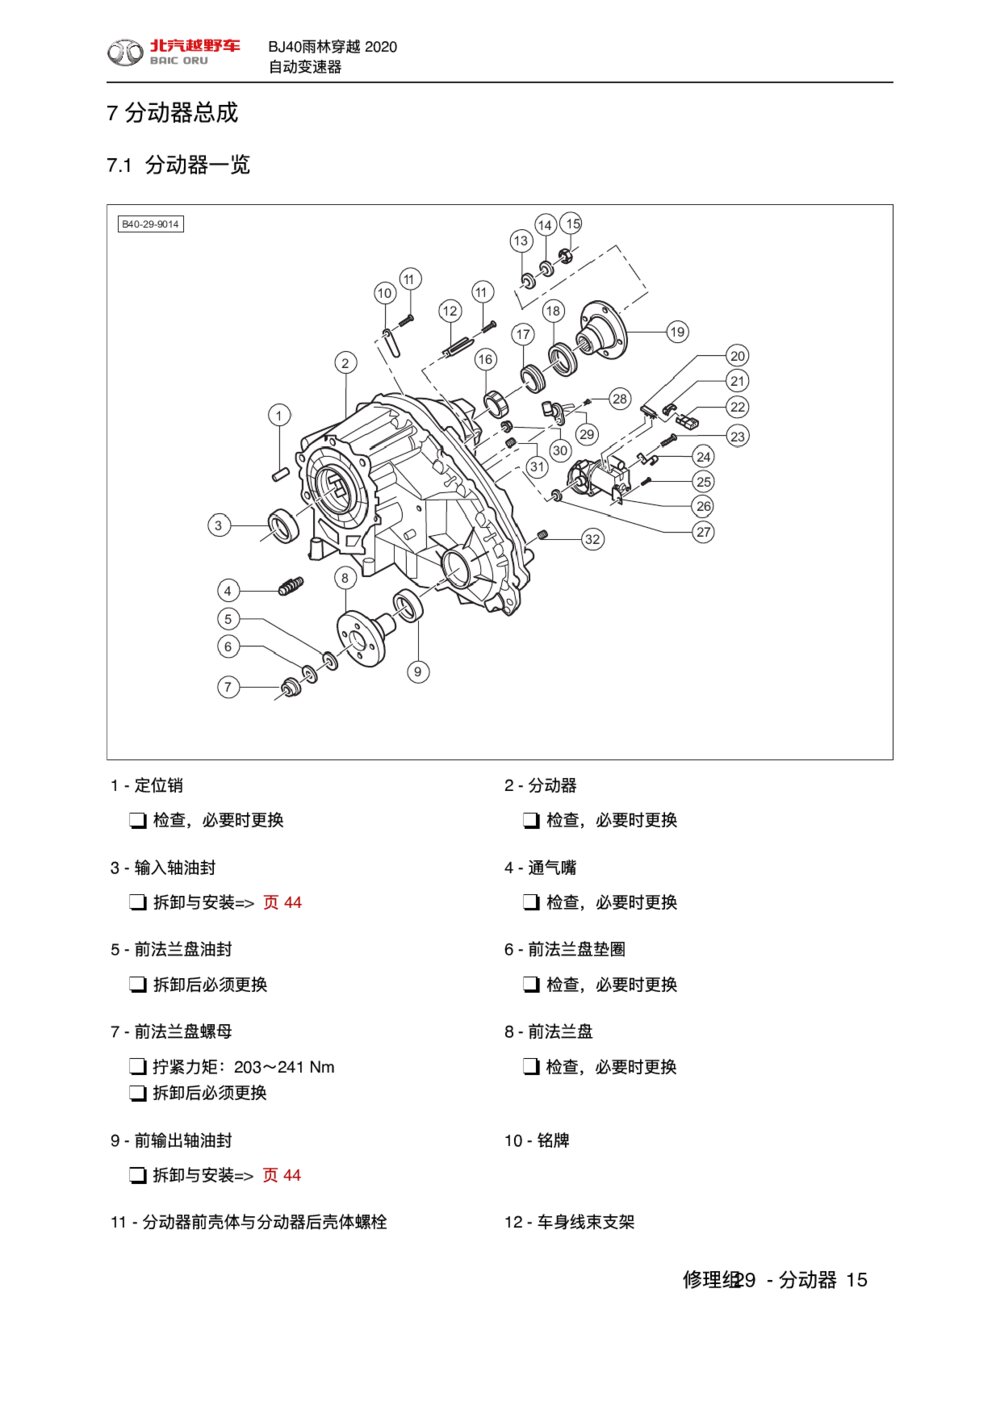 2020款北京BJ40雨林穿越版分动器总成手册